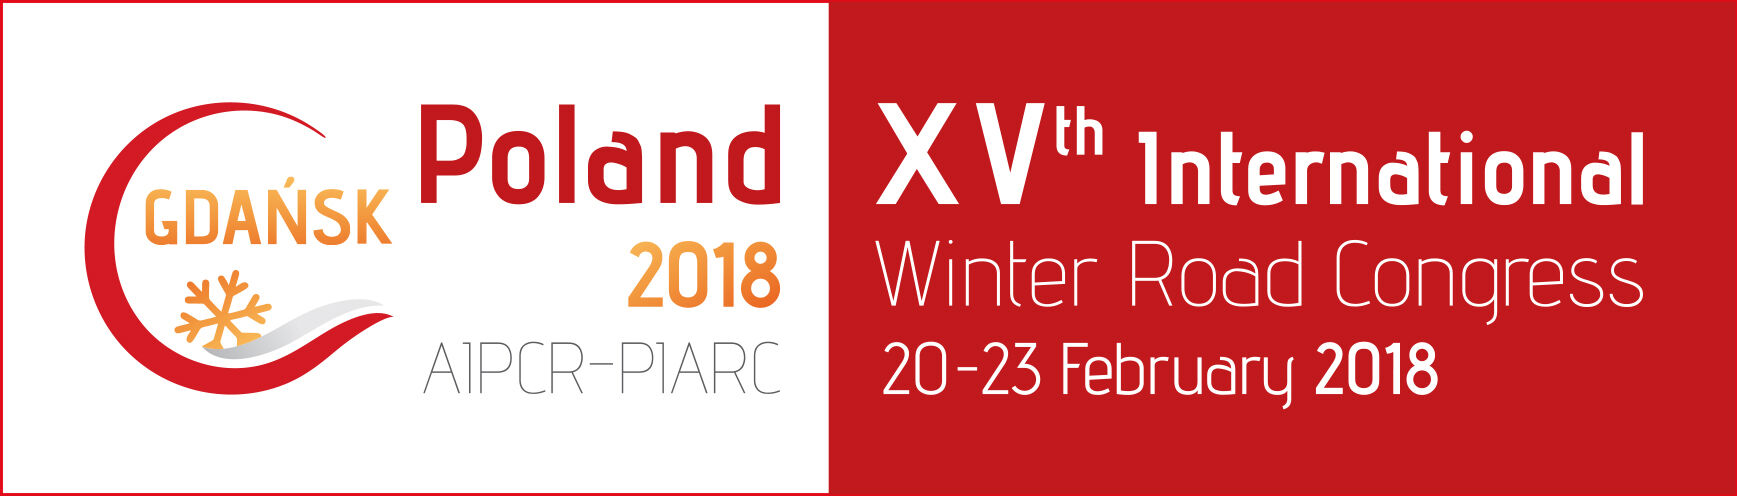 XV Międzynarodowy Zimowy Kongres Drogowy - Gdańsk 2018 - PIARC